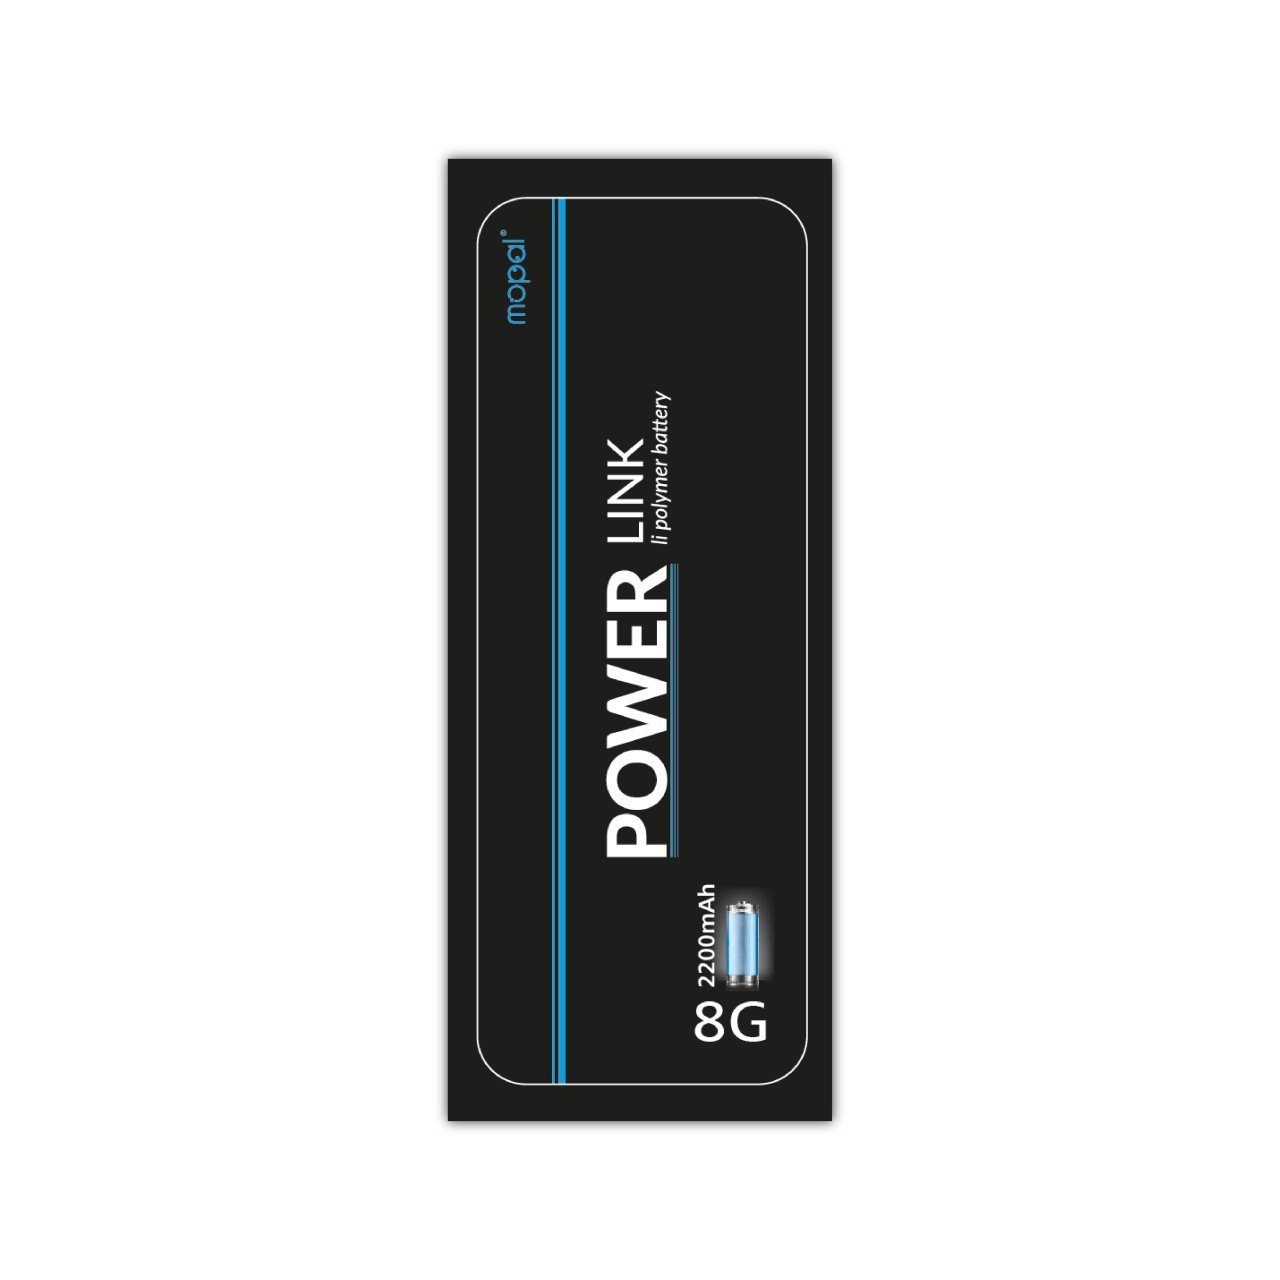 Mopal Power Link İphone 8G Ekstra Güçlü 2200 Mah Batarya